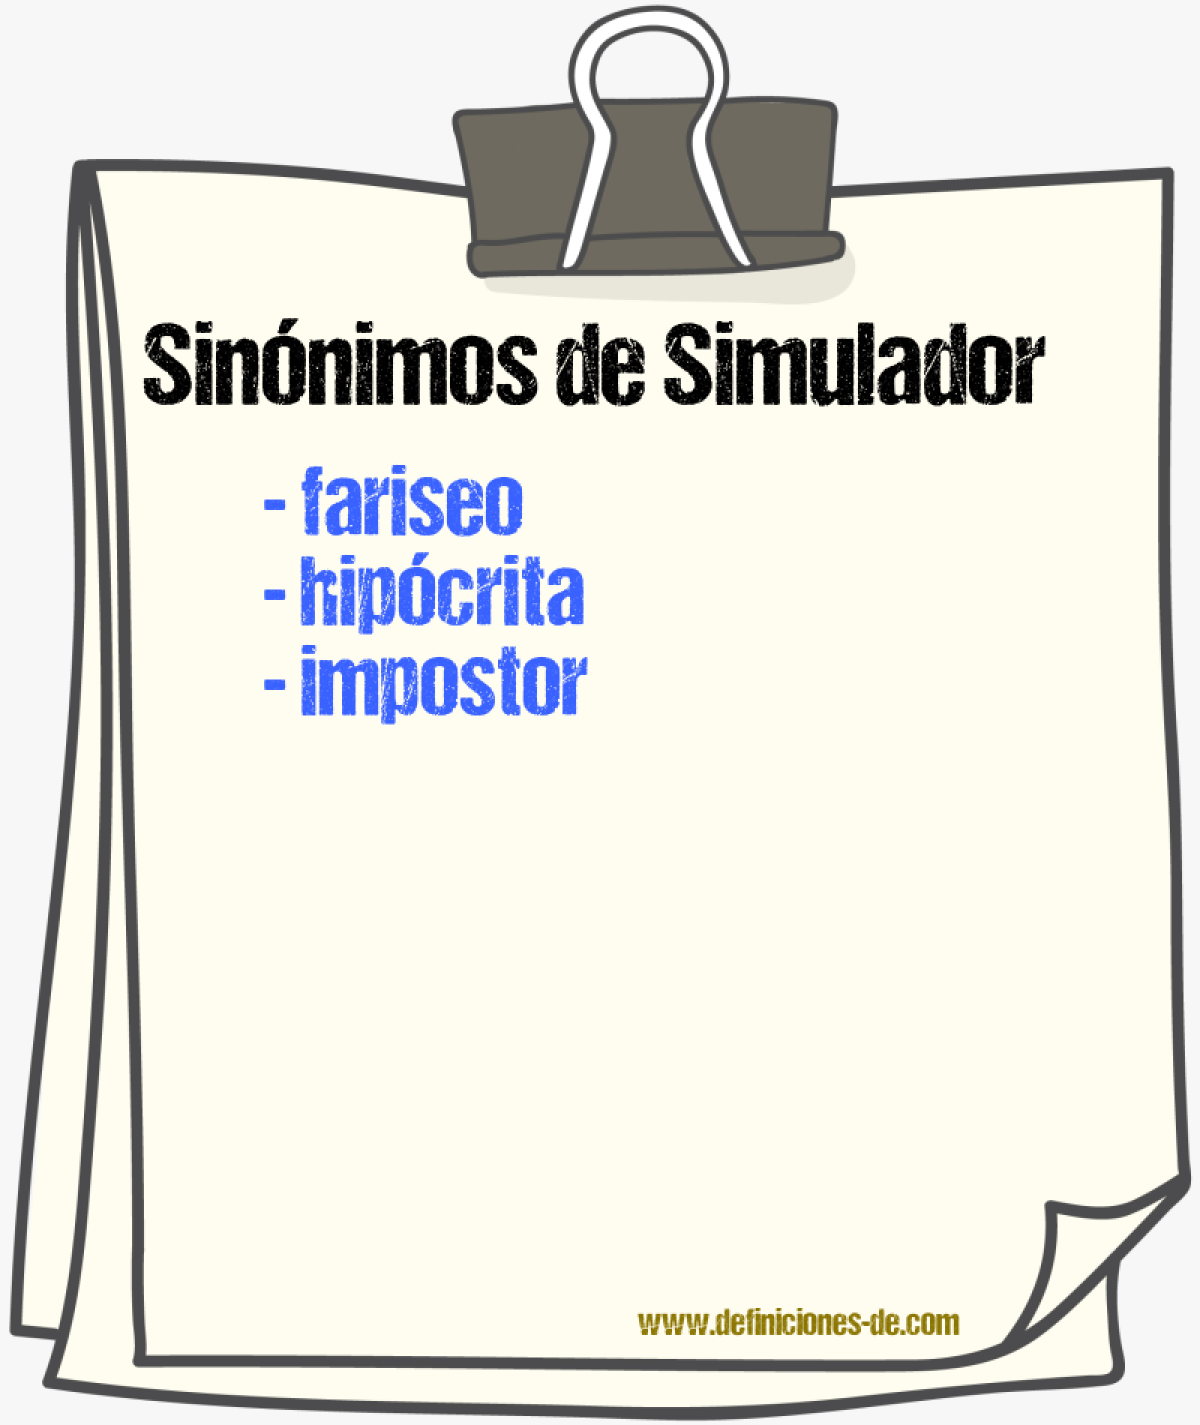 Sinónimos de simulador